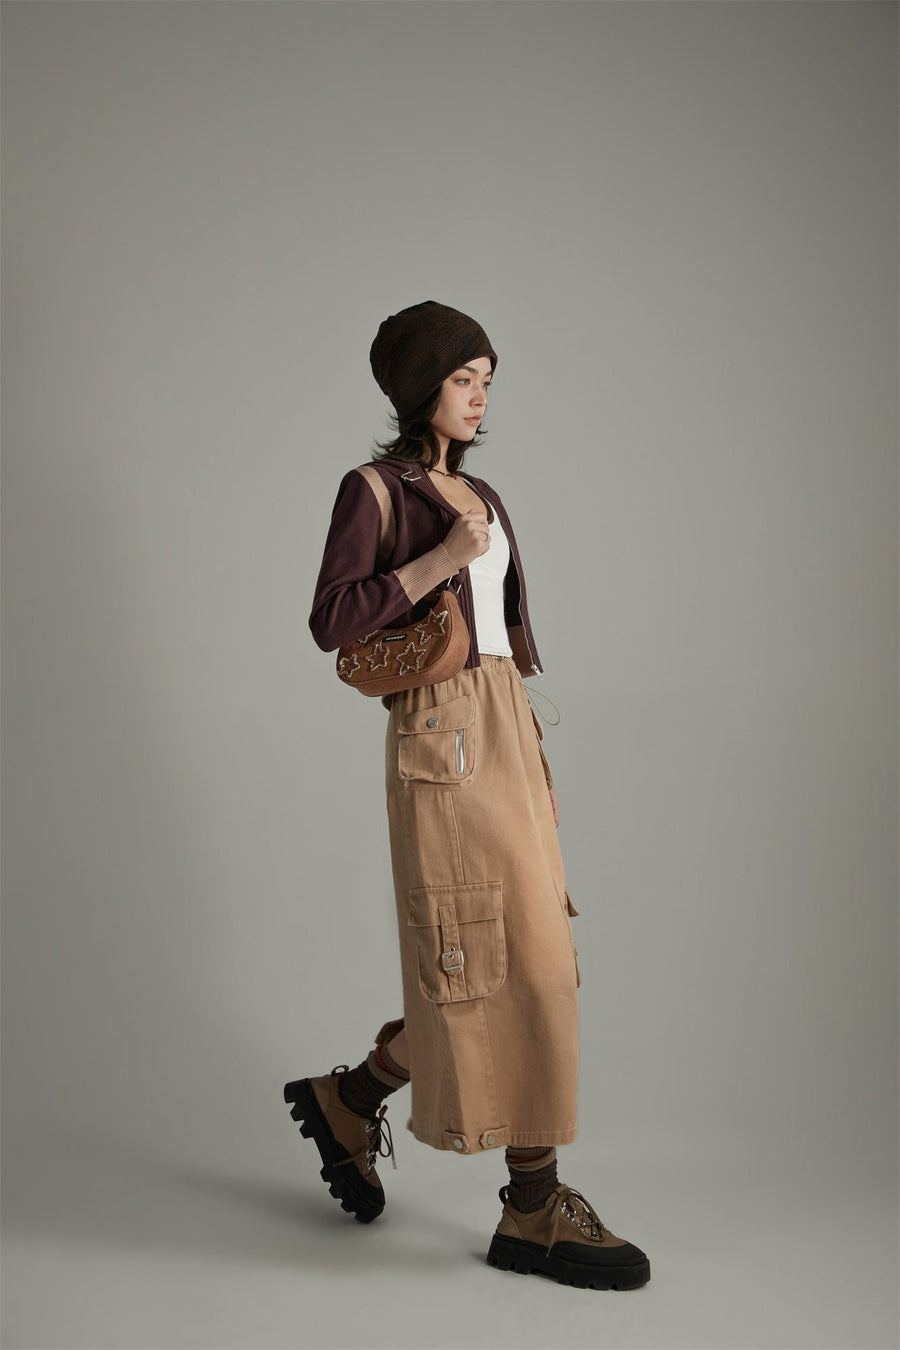 Denim Or Brown Cotton Cargo Skirt